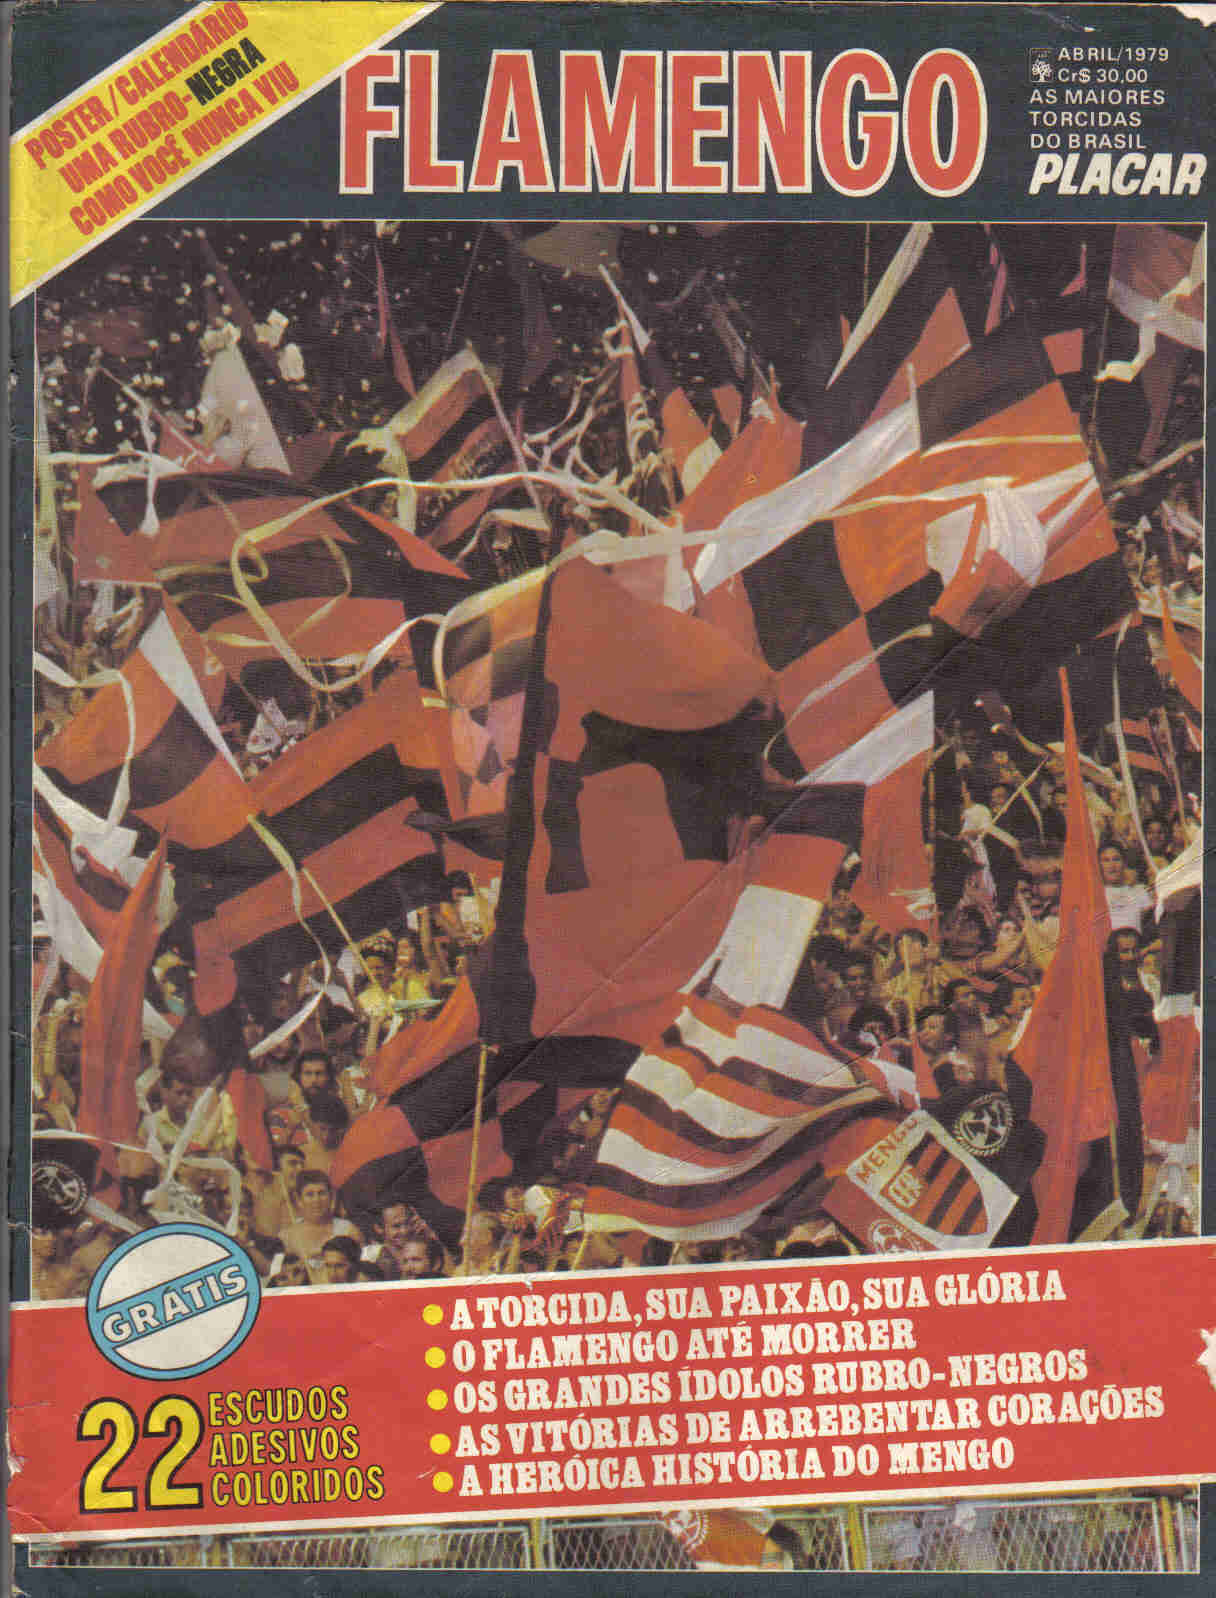 As maiores torcidas - Flamengo